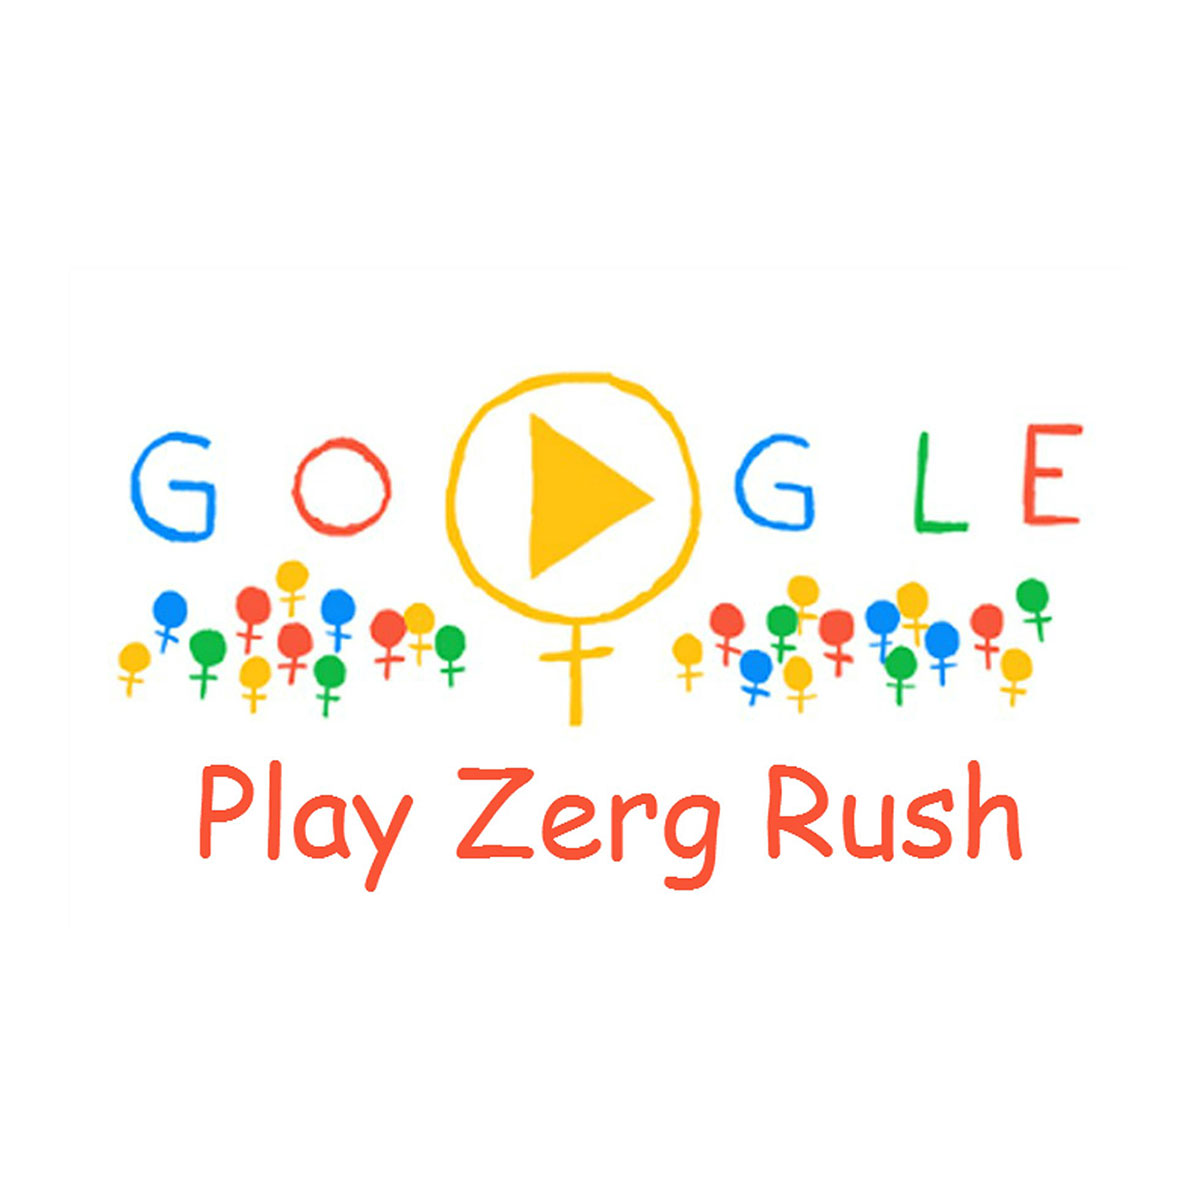  the Google Zerg Rush Easter egg